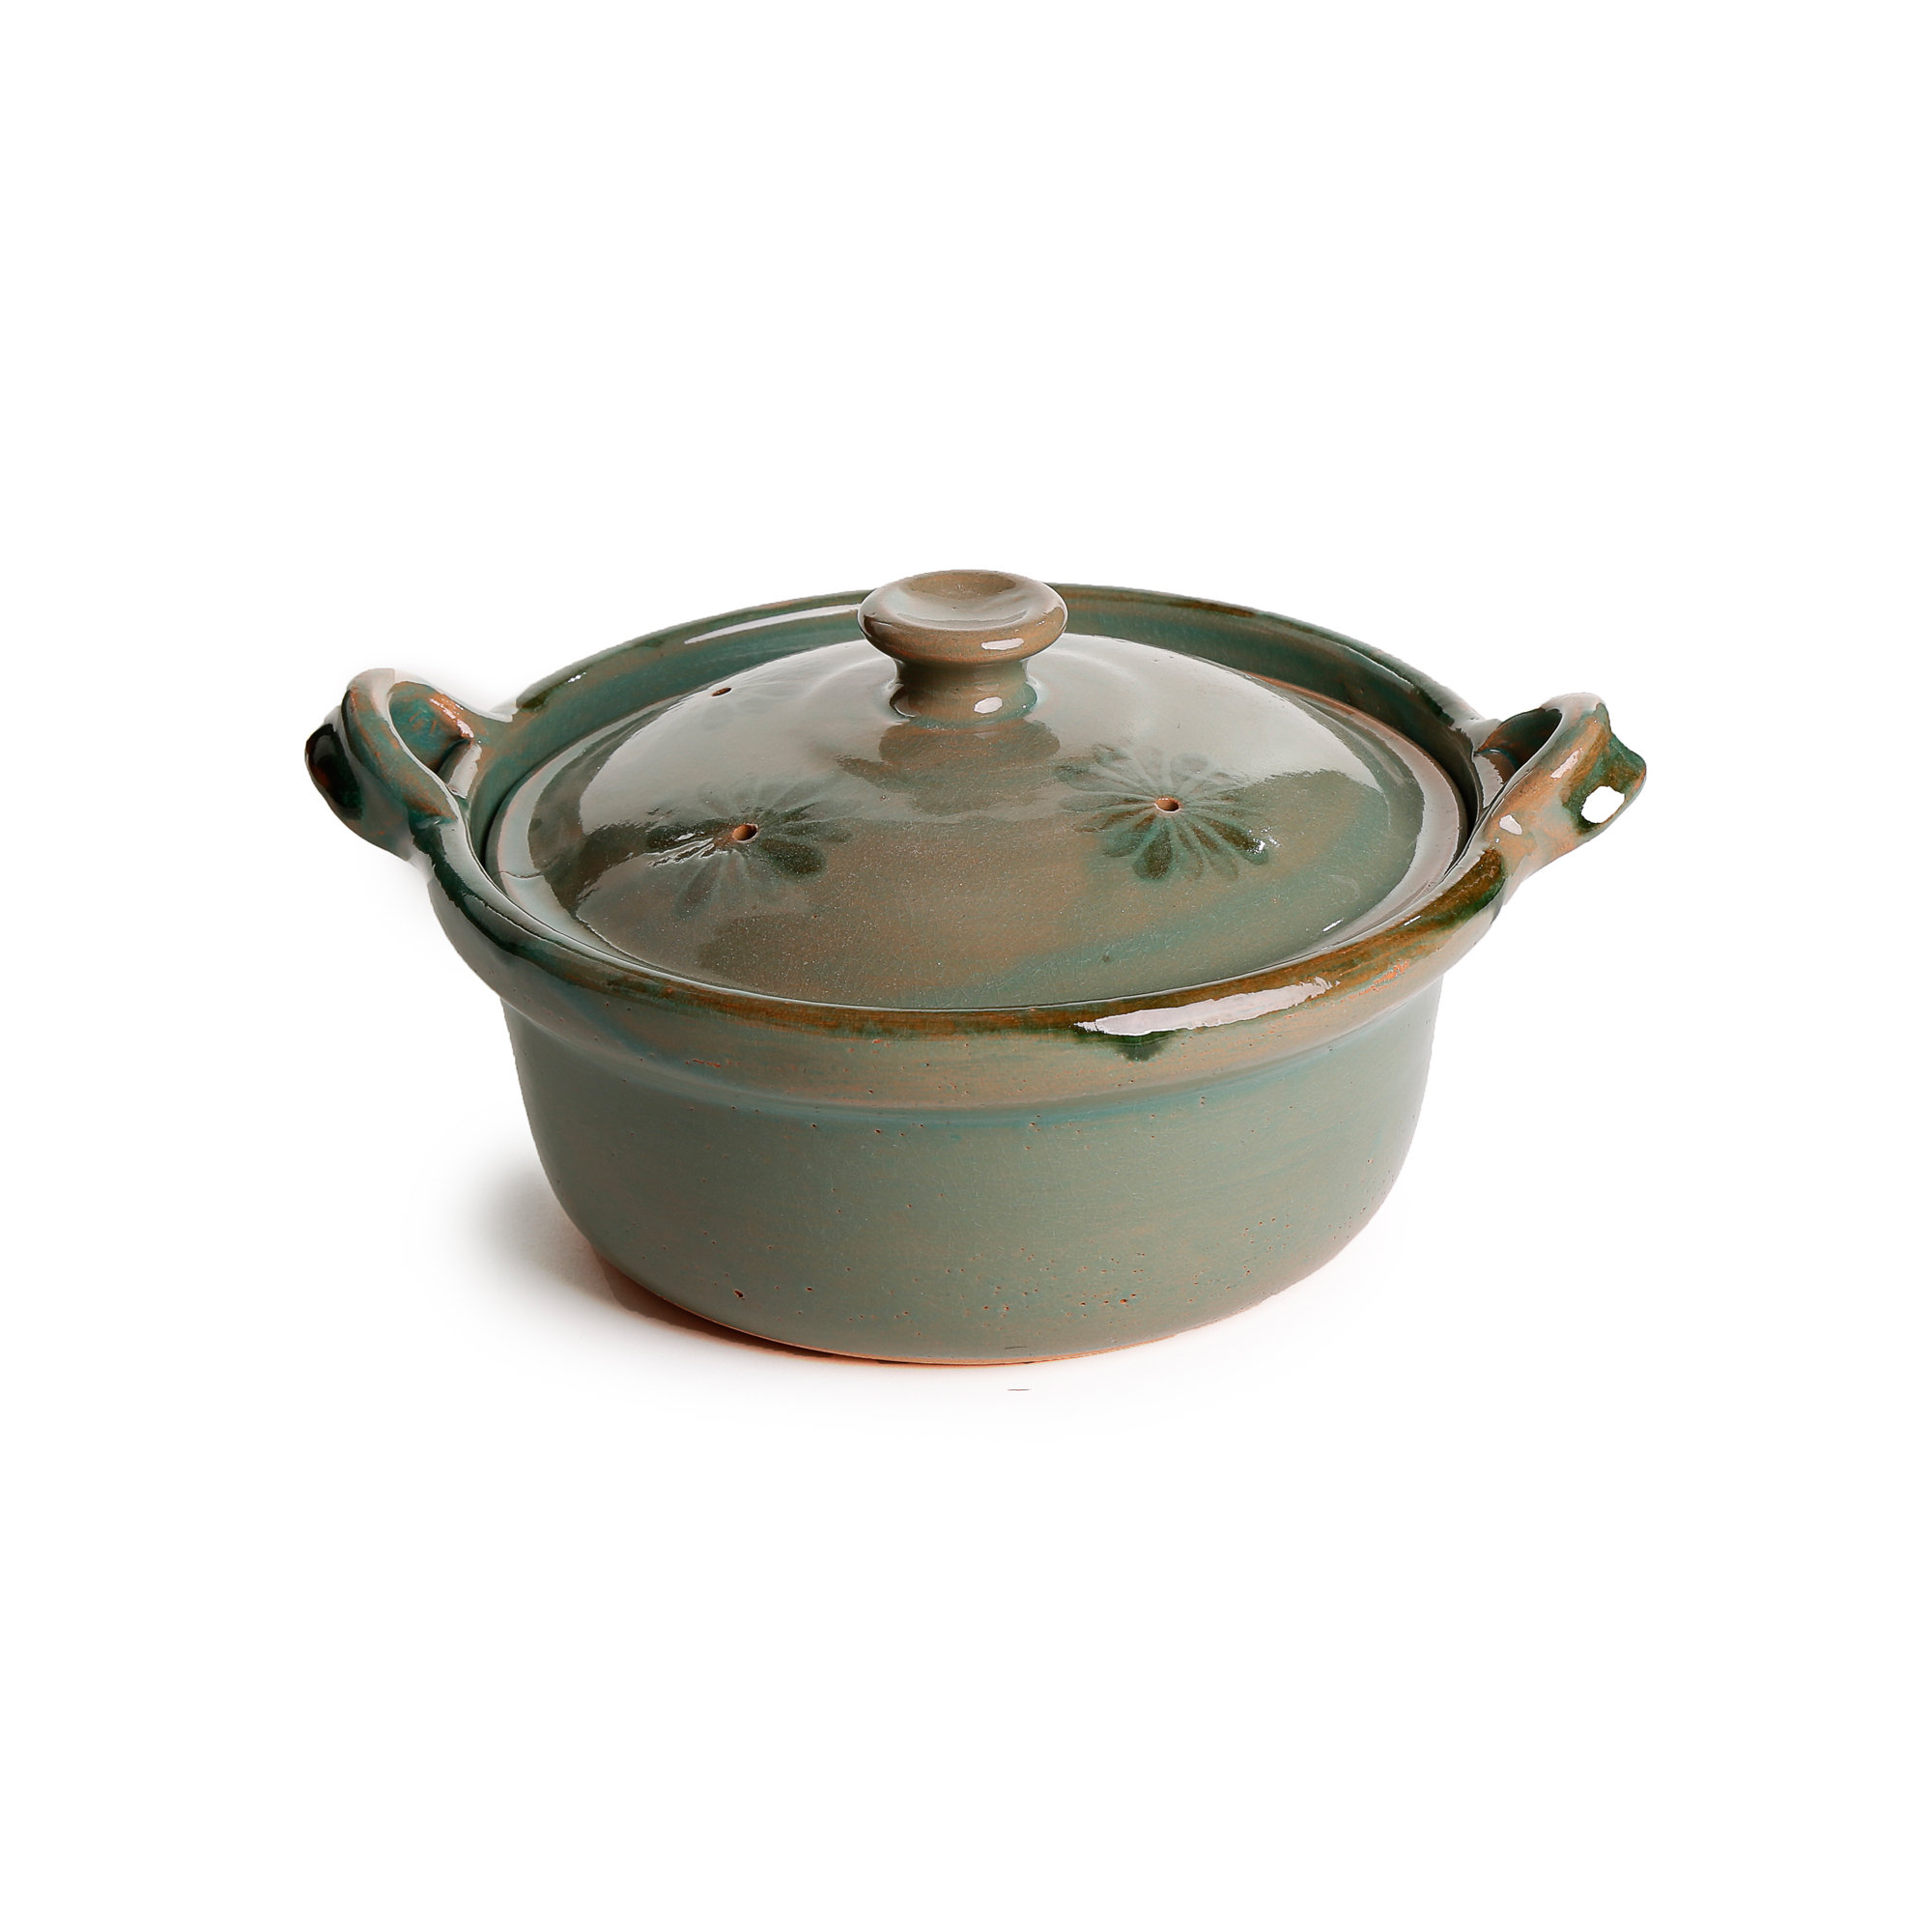 https://assets.wfcdn.com/im/41397878/compr-r85/2225/222572004/ancient-cookware-terracotta-round-dutch-oven.jpg